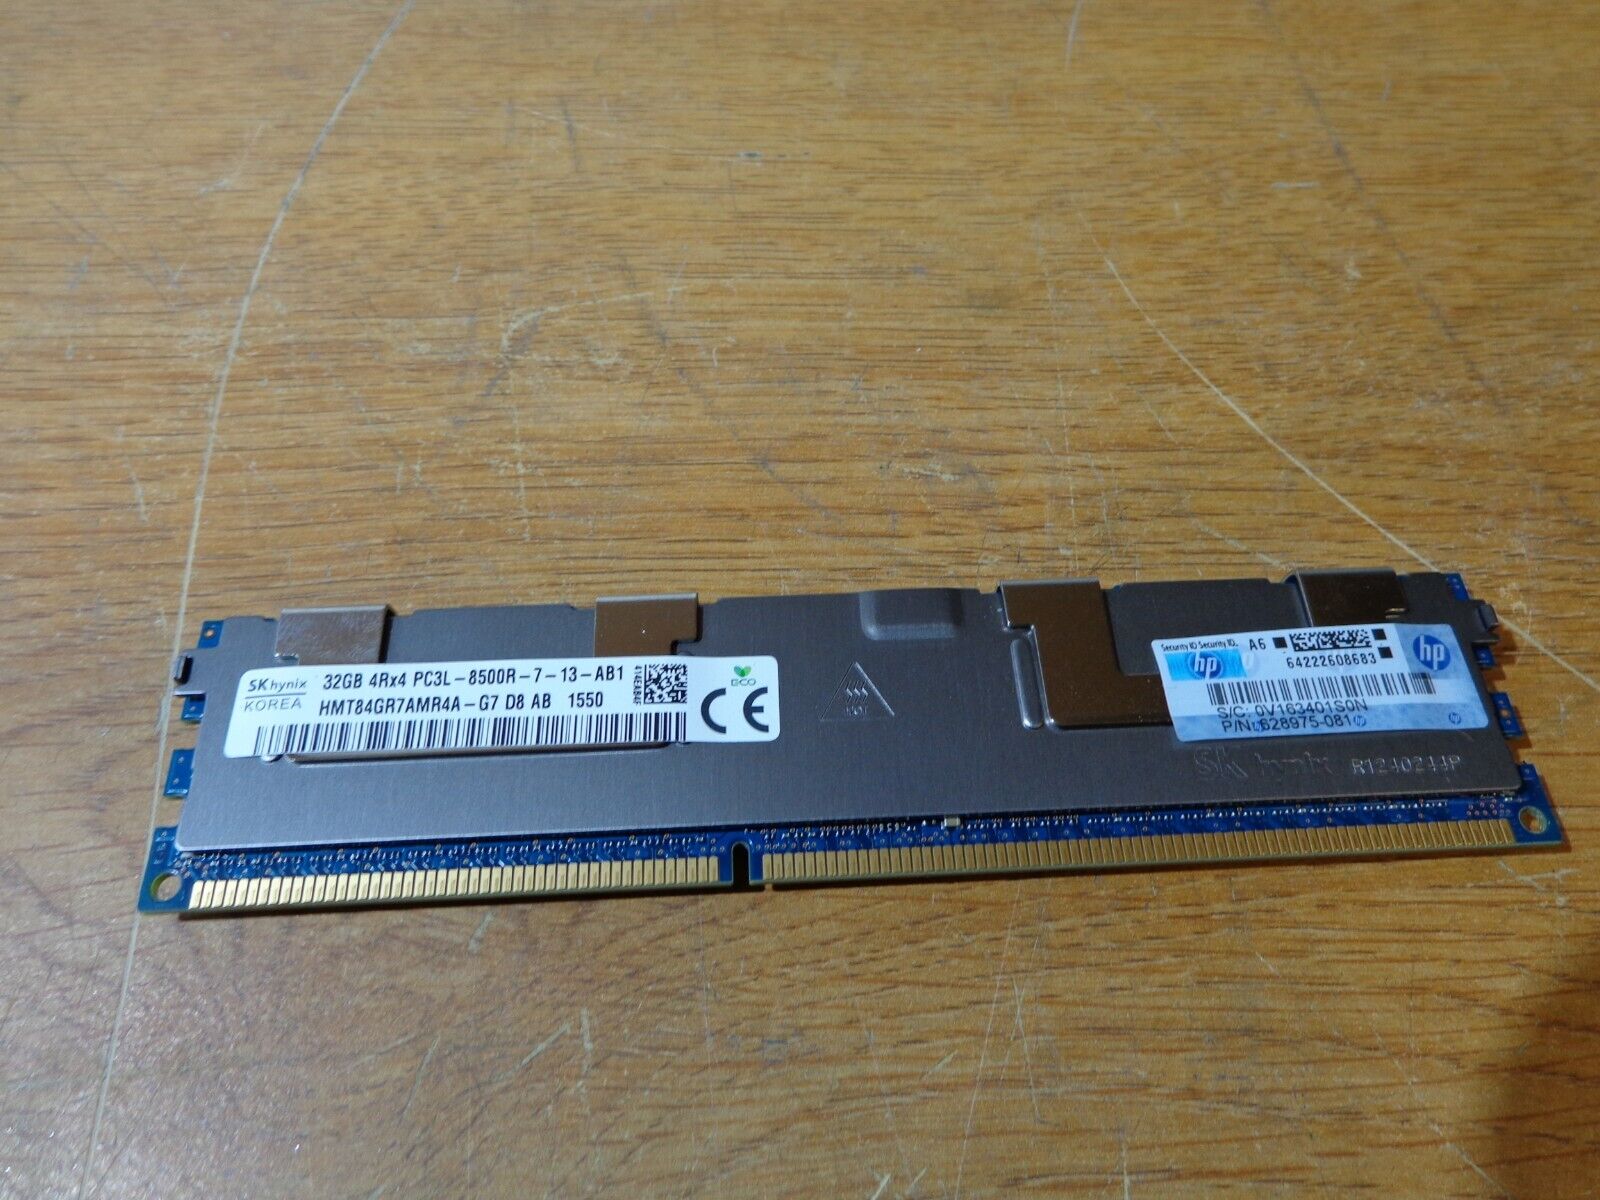 HP Samsung 32GB (1x32GB) PC3L-8500R Server Memory M393B4G70BM0-YF8 628975-081